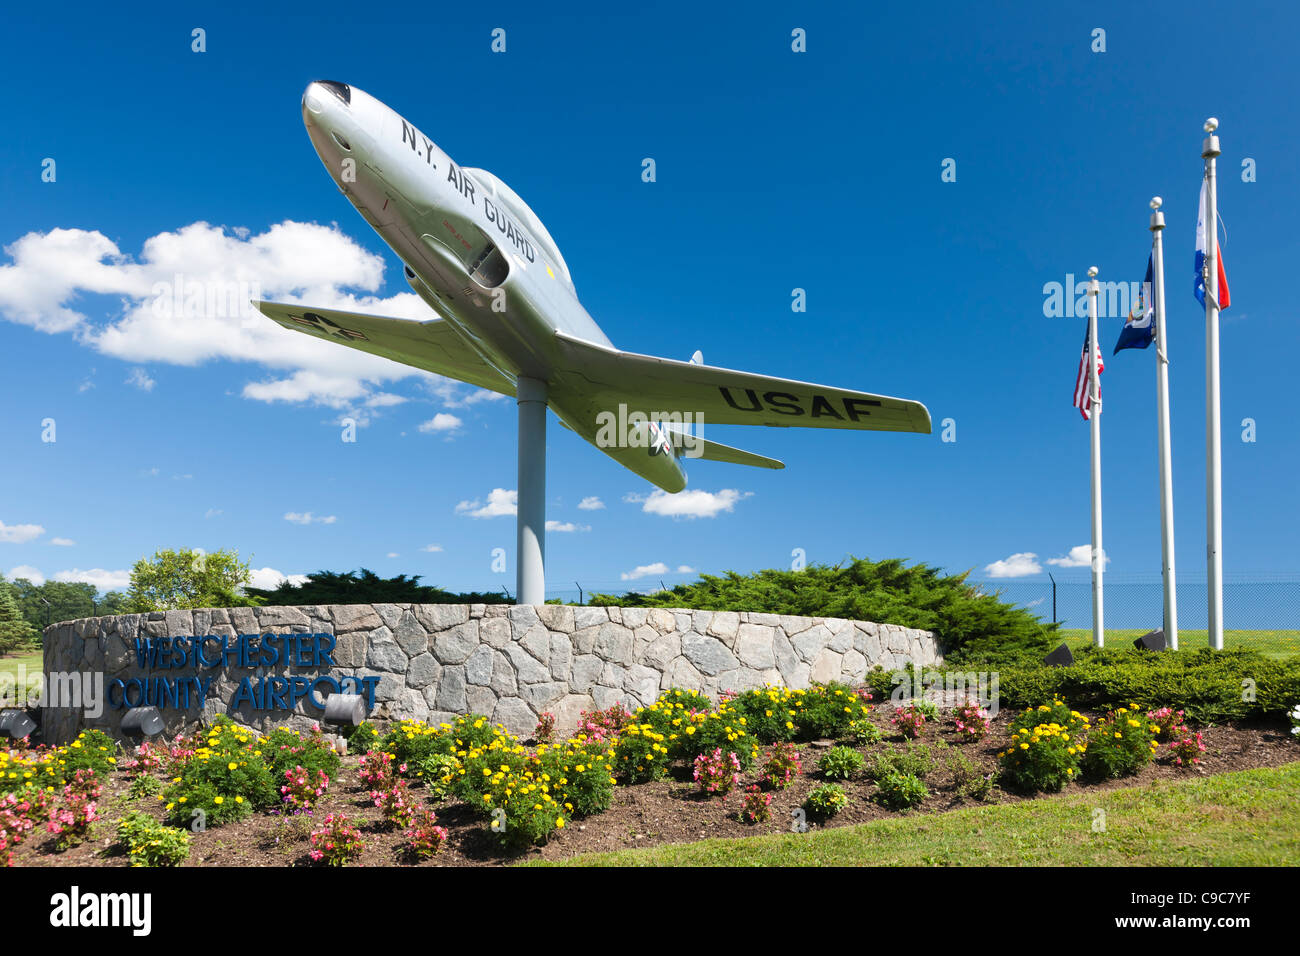 New York Air National Guard Lockheed T-33 am Eingang der Westchester County Airport in der Nähe von White Plains, New York. Stockfoto